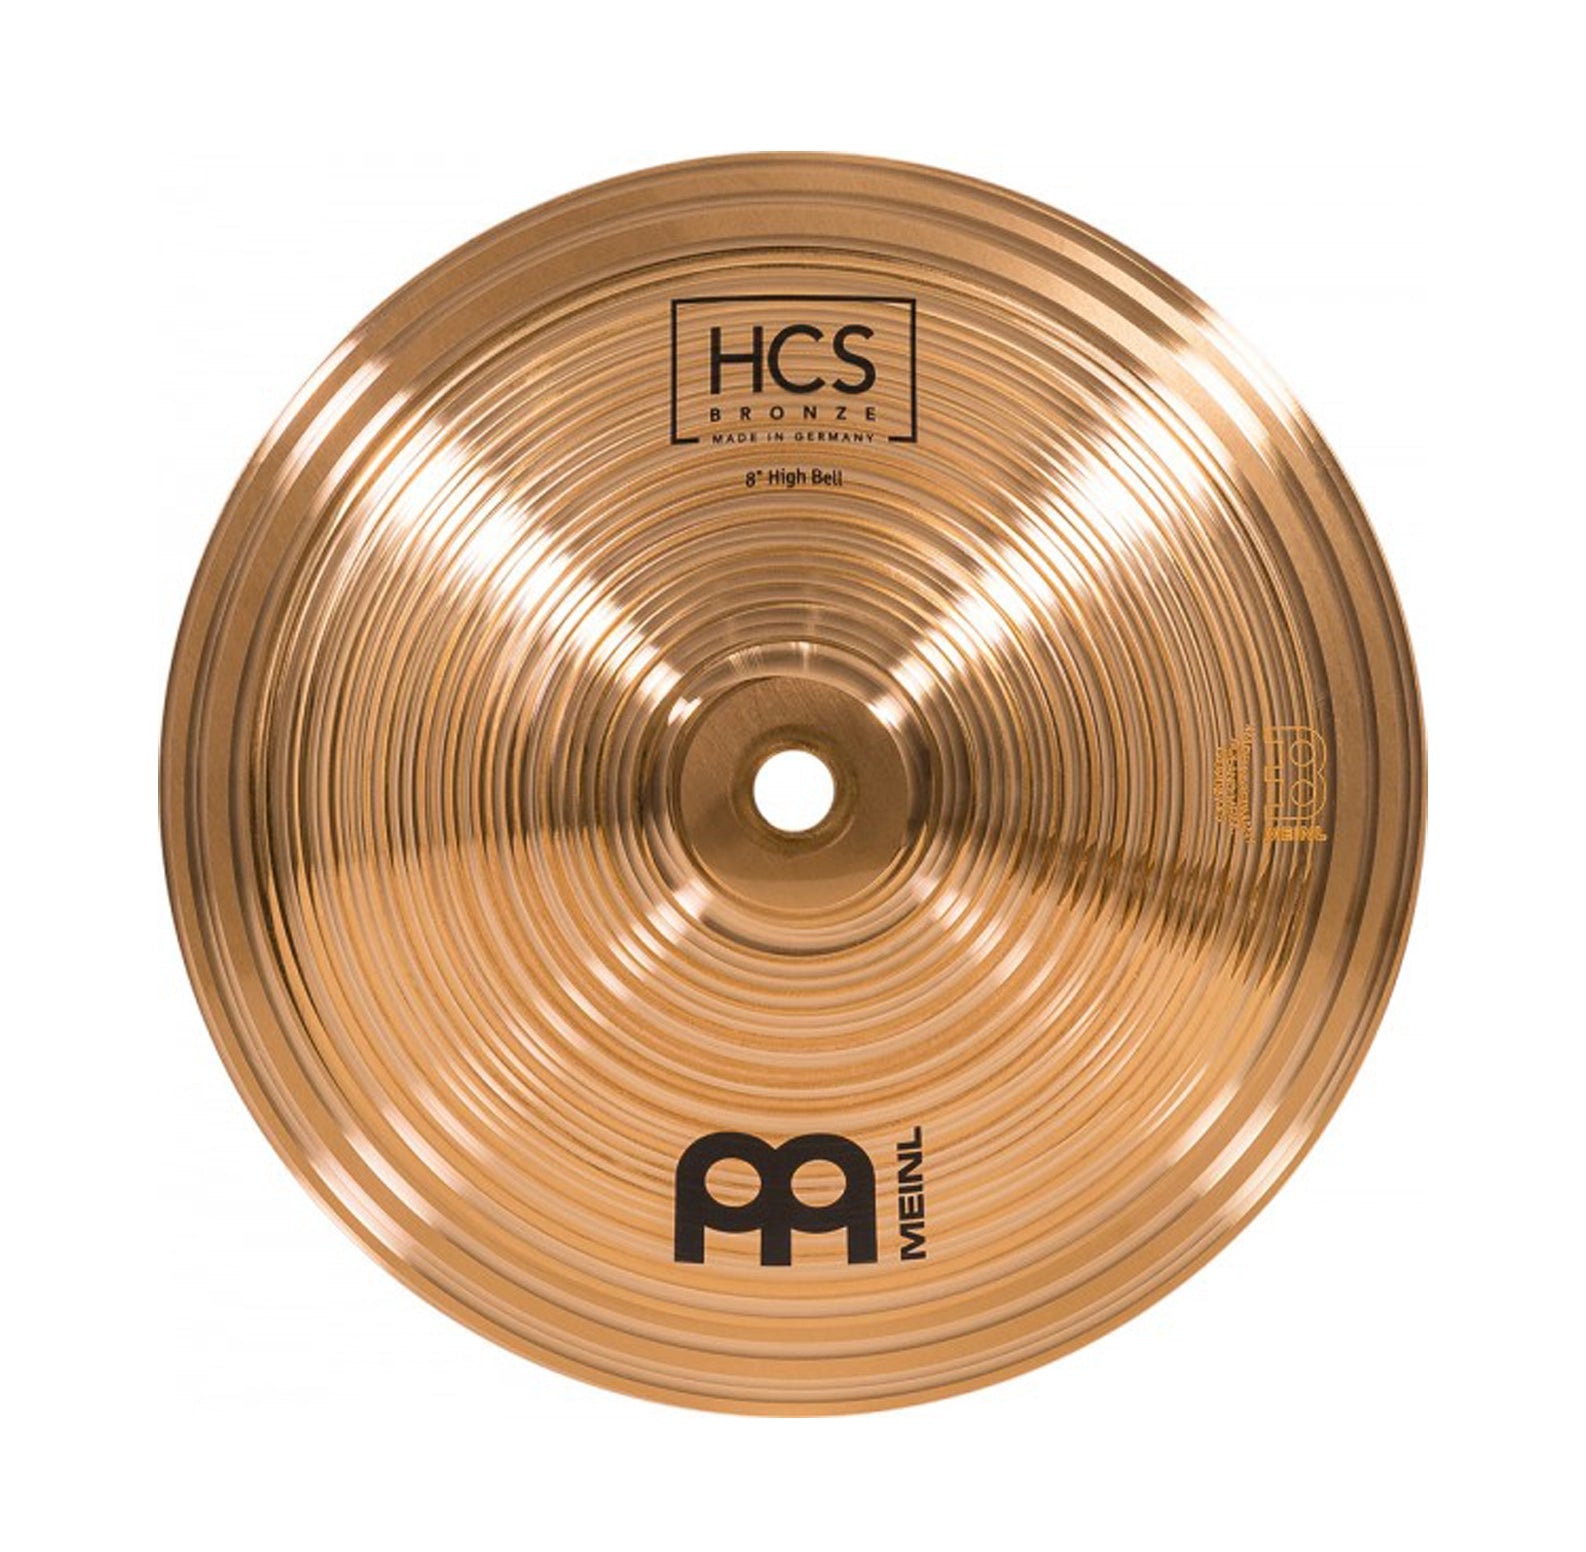 Meinl 8" Hcs Bronze High Bell Cymbal